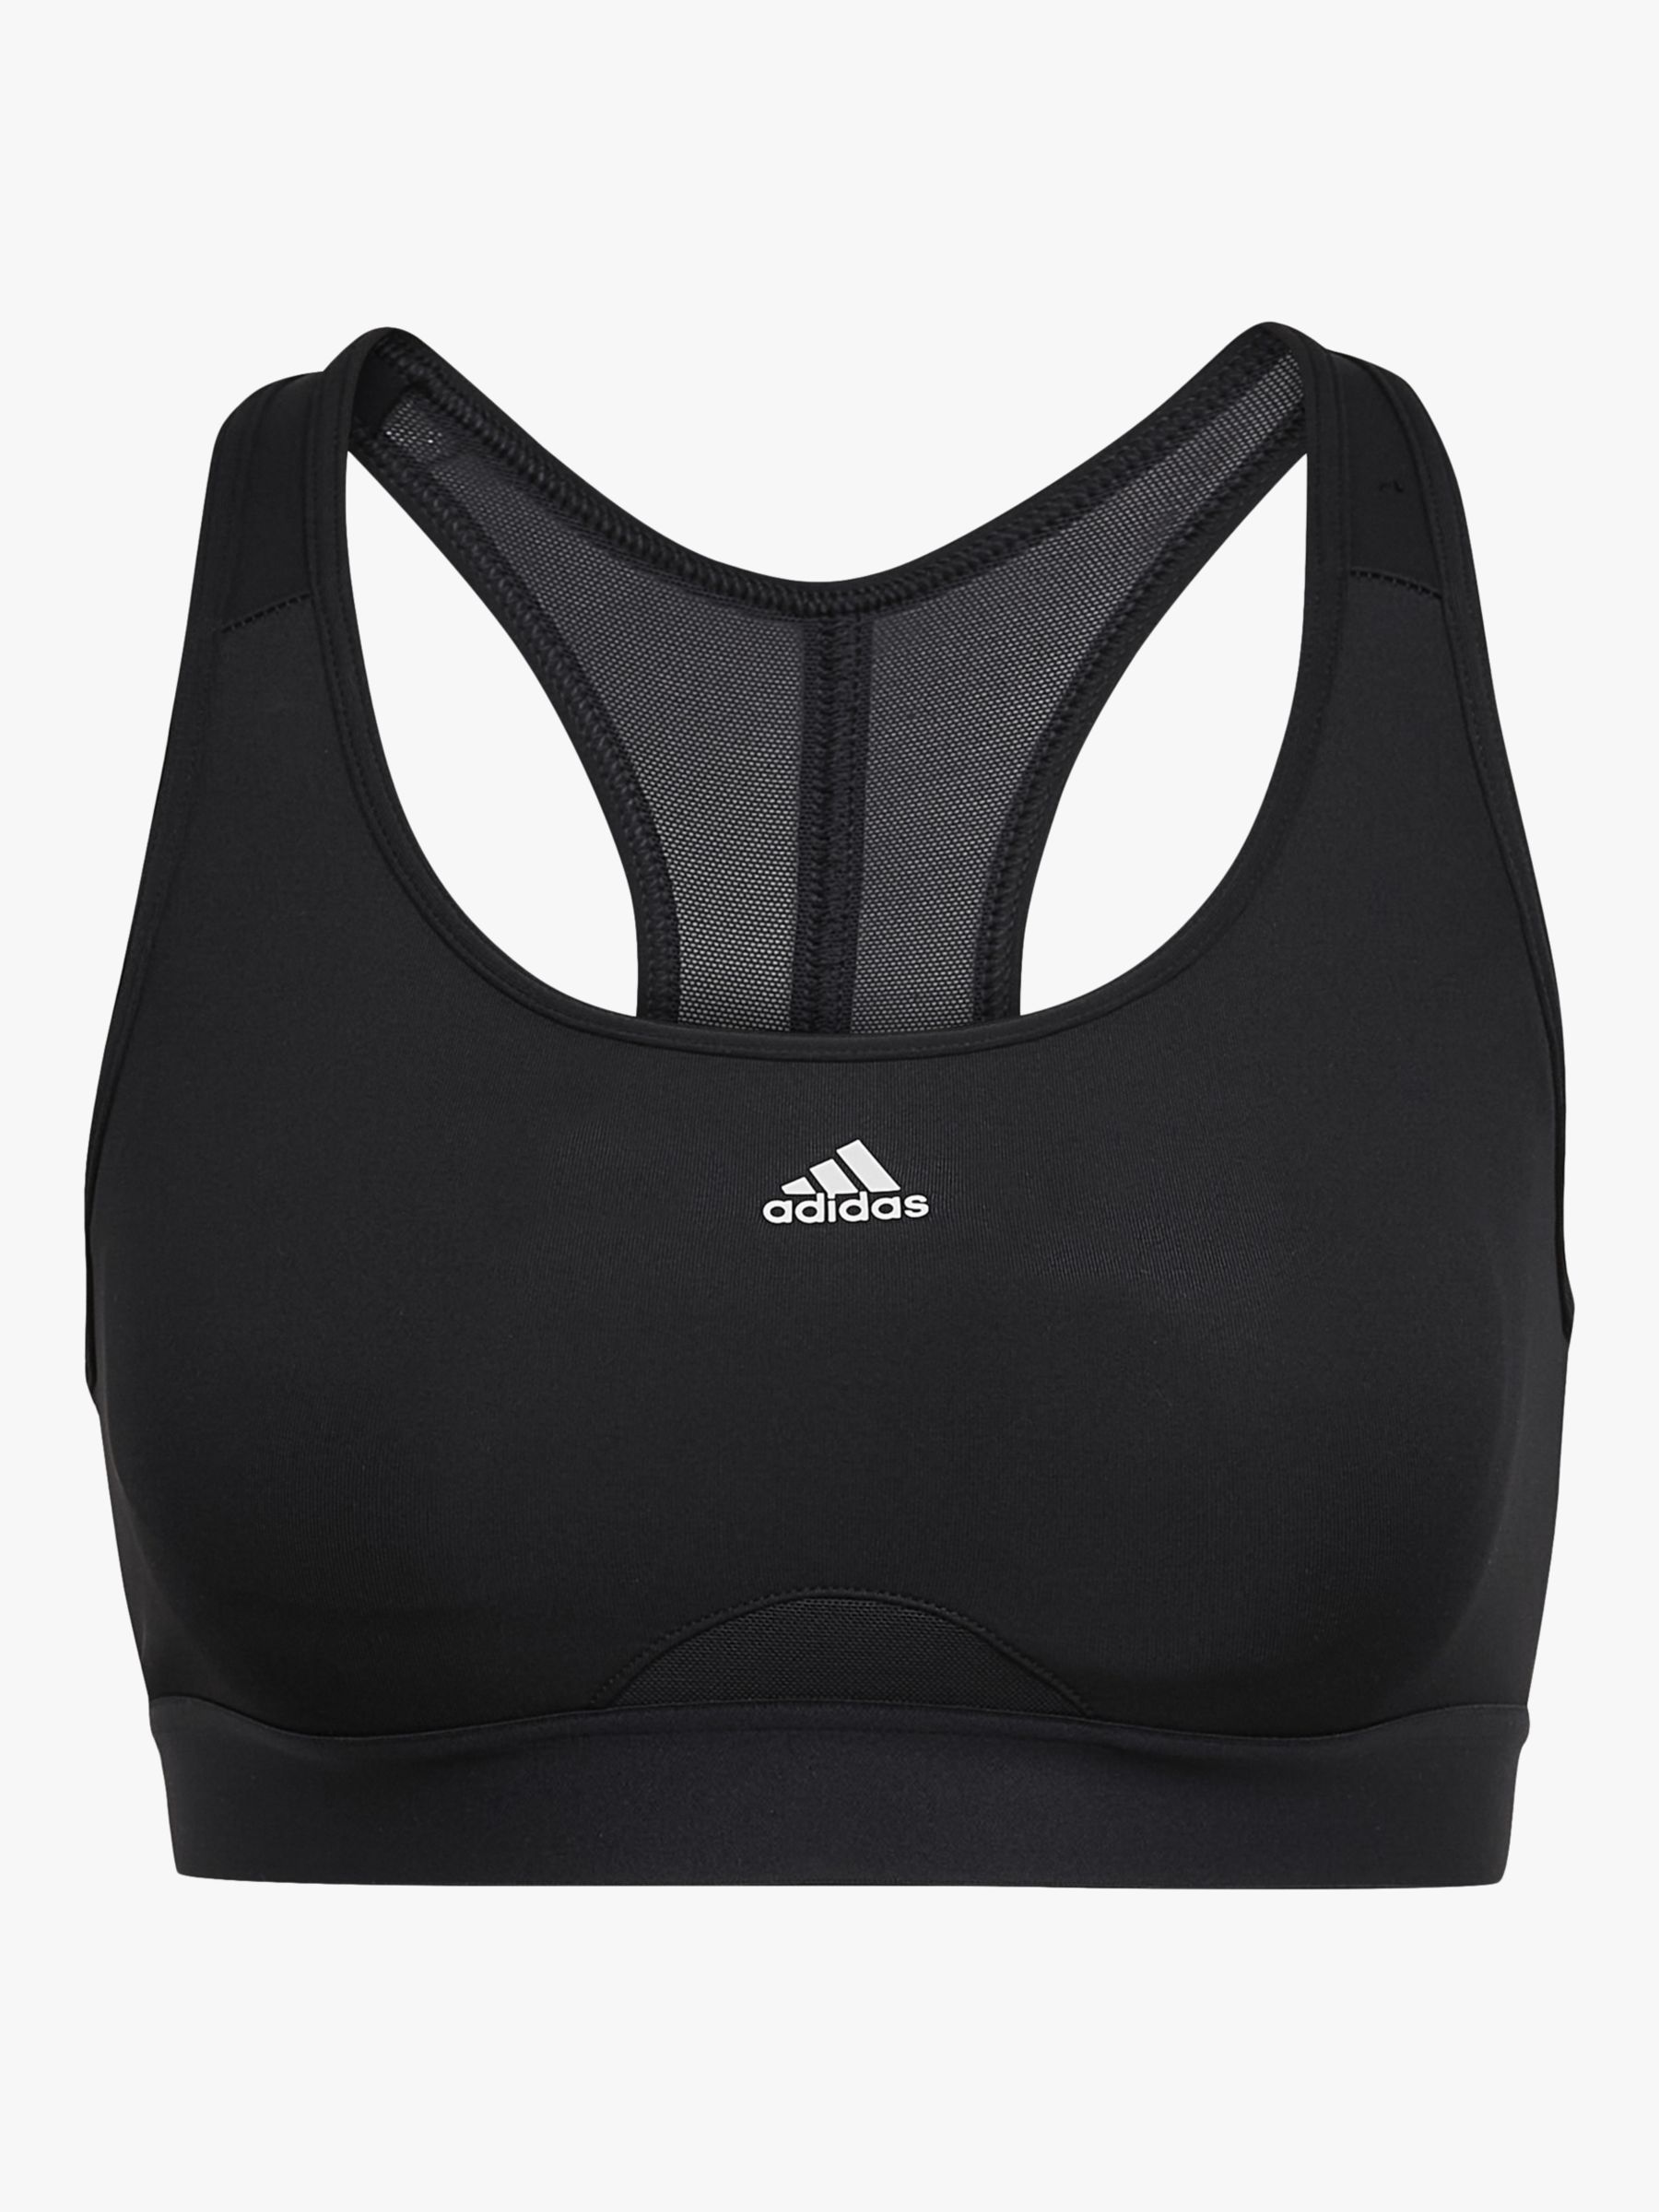 Adidas Run Medium Support Merino Bra - Sports bra Women's